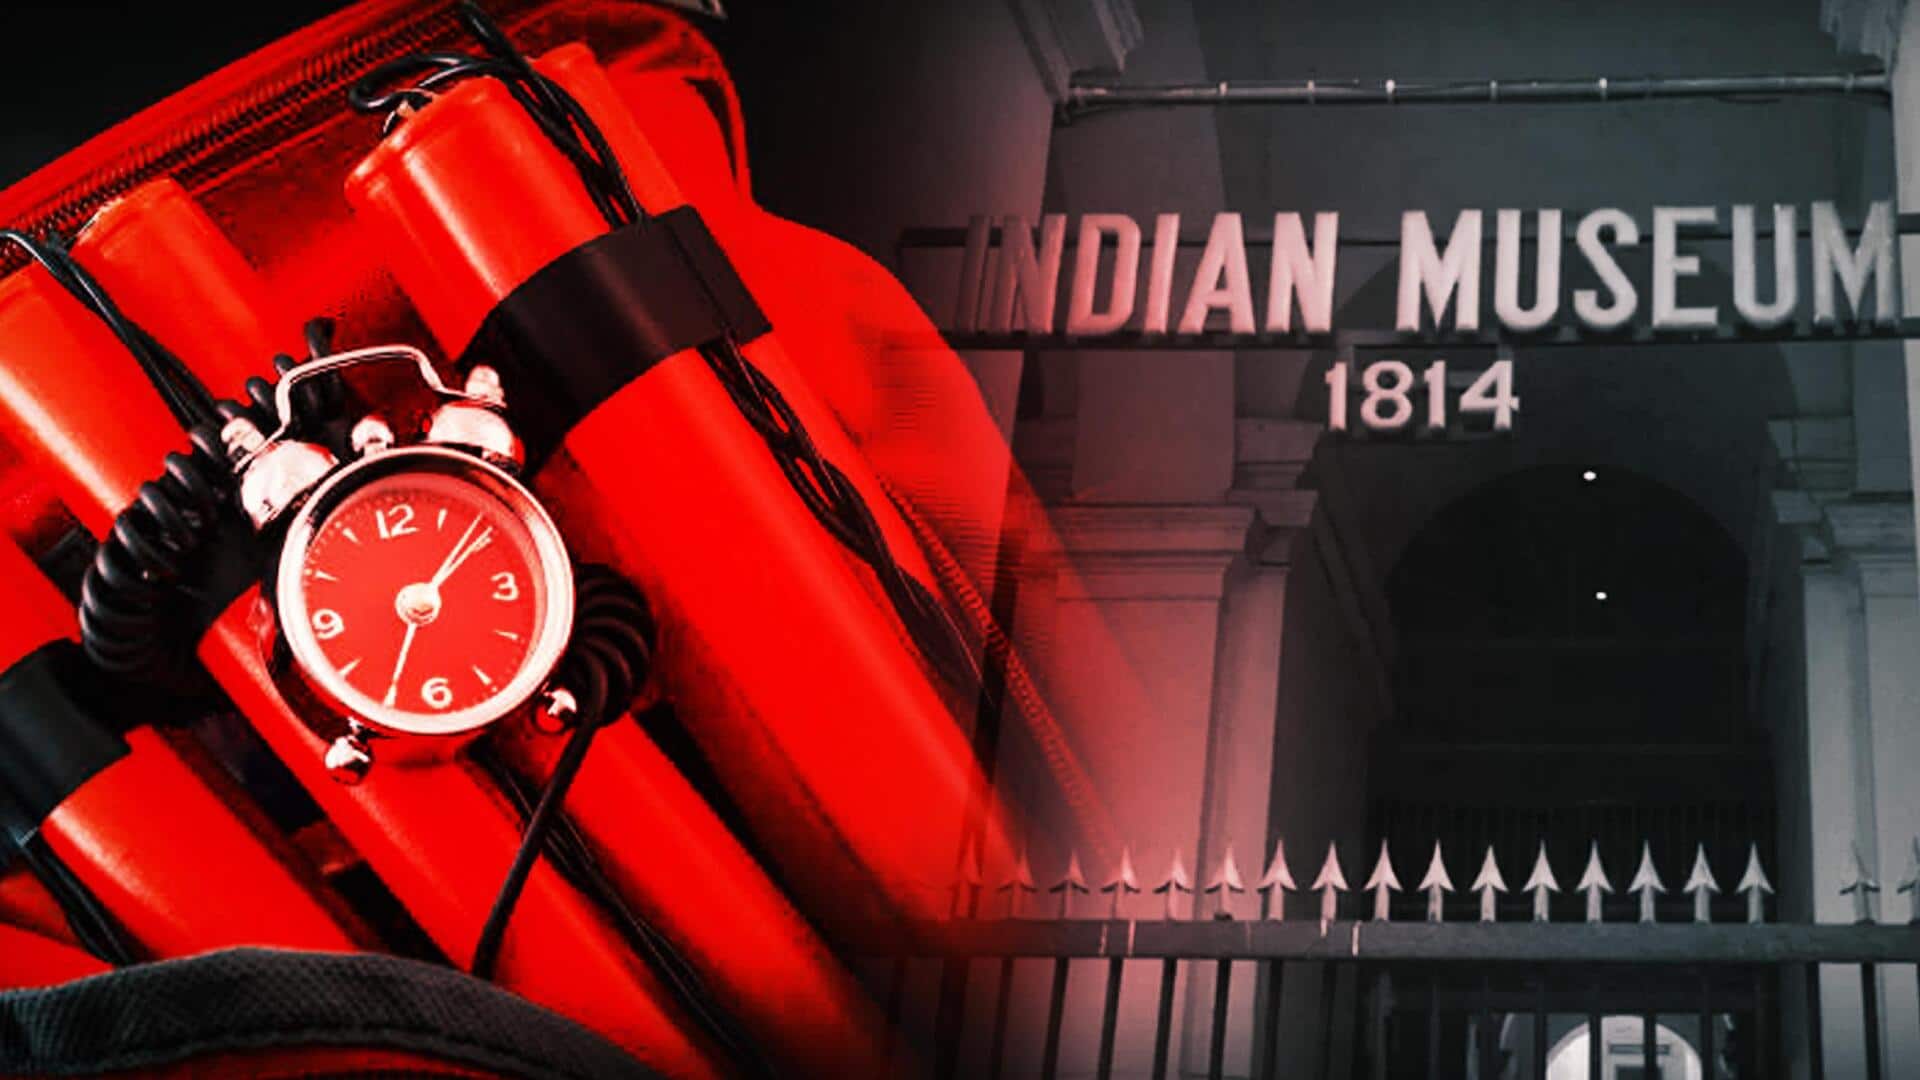 15 Delhi museums get hoax bomb threats